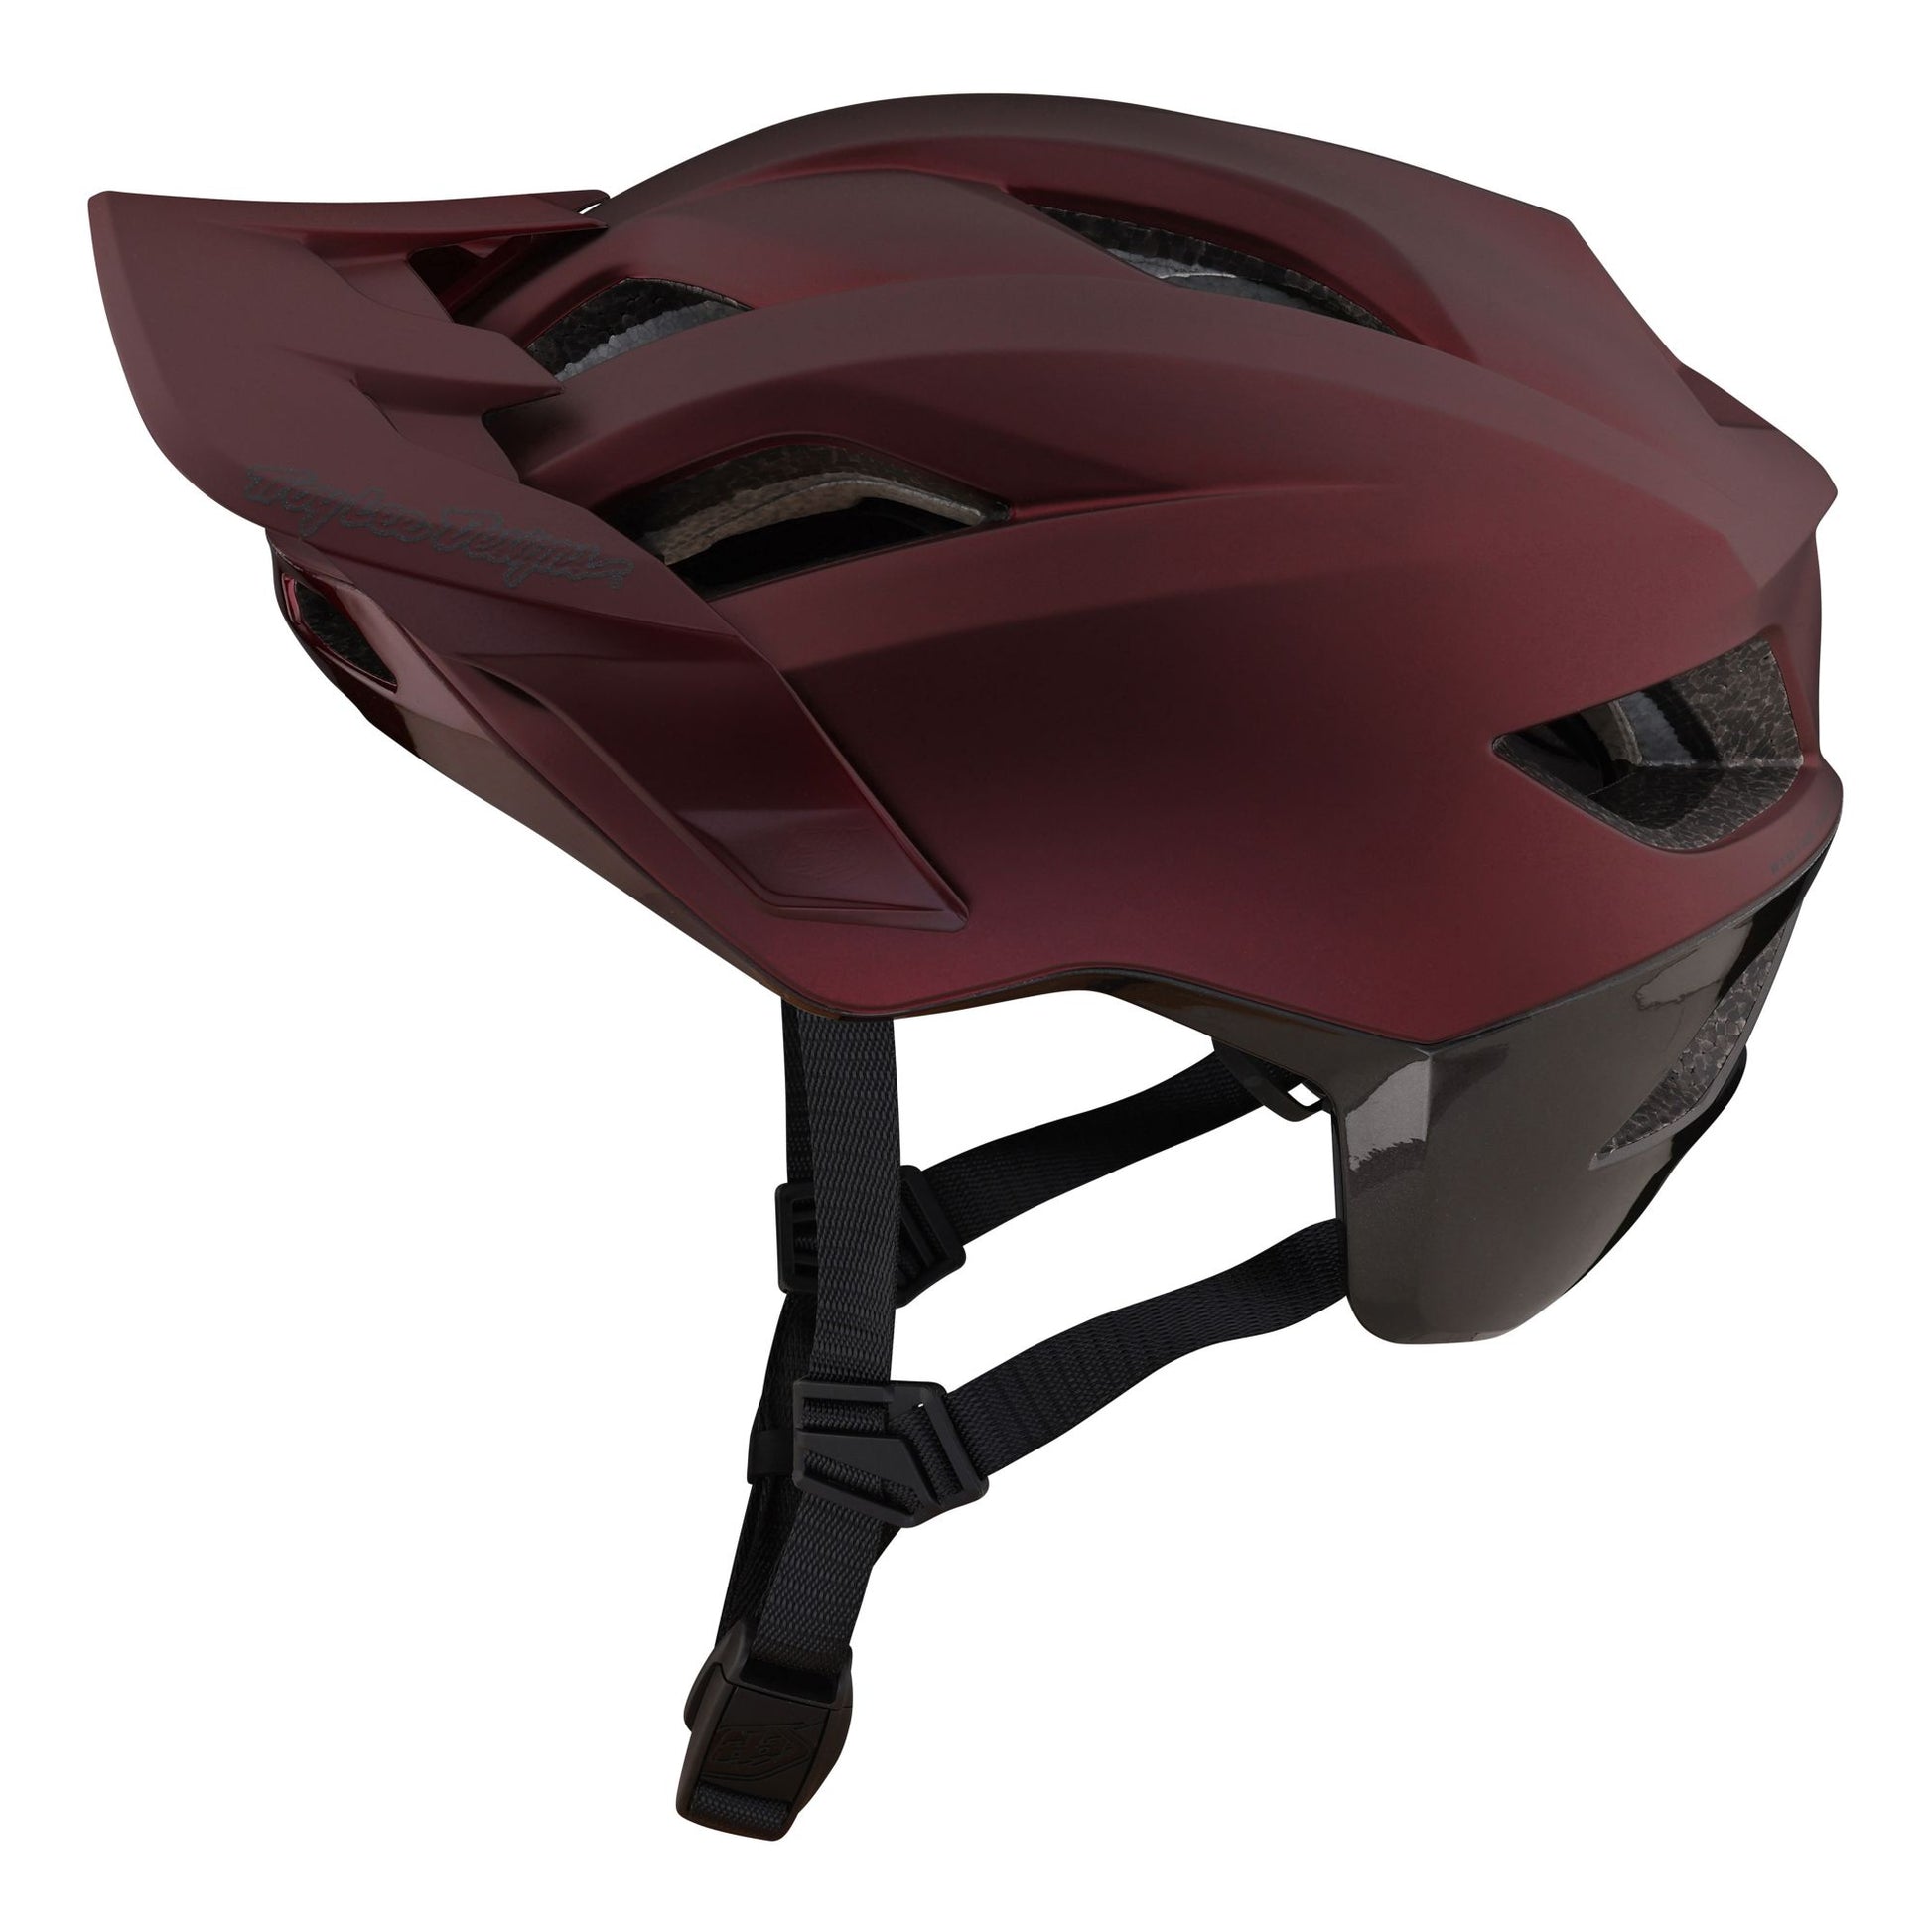 Troy Lee Designs Flowline SE MIPS Helmet Radian Burgundy/Charcoal Bike Helmets